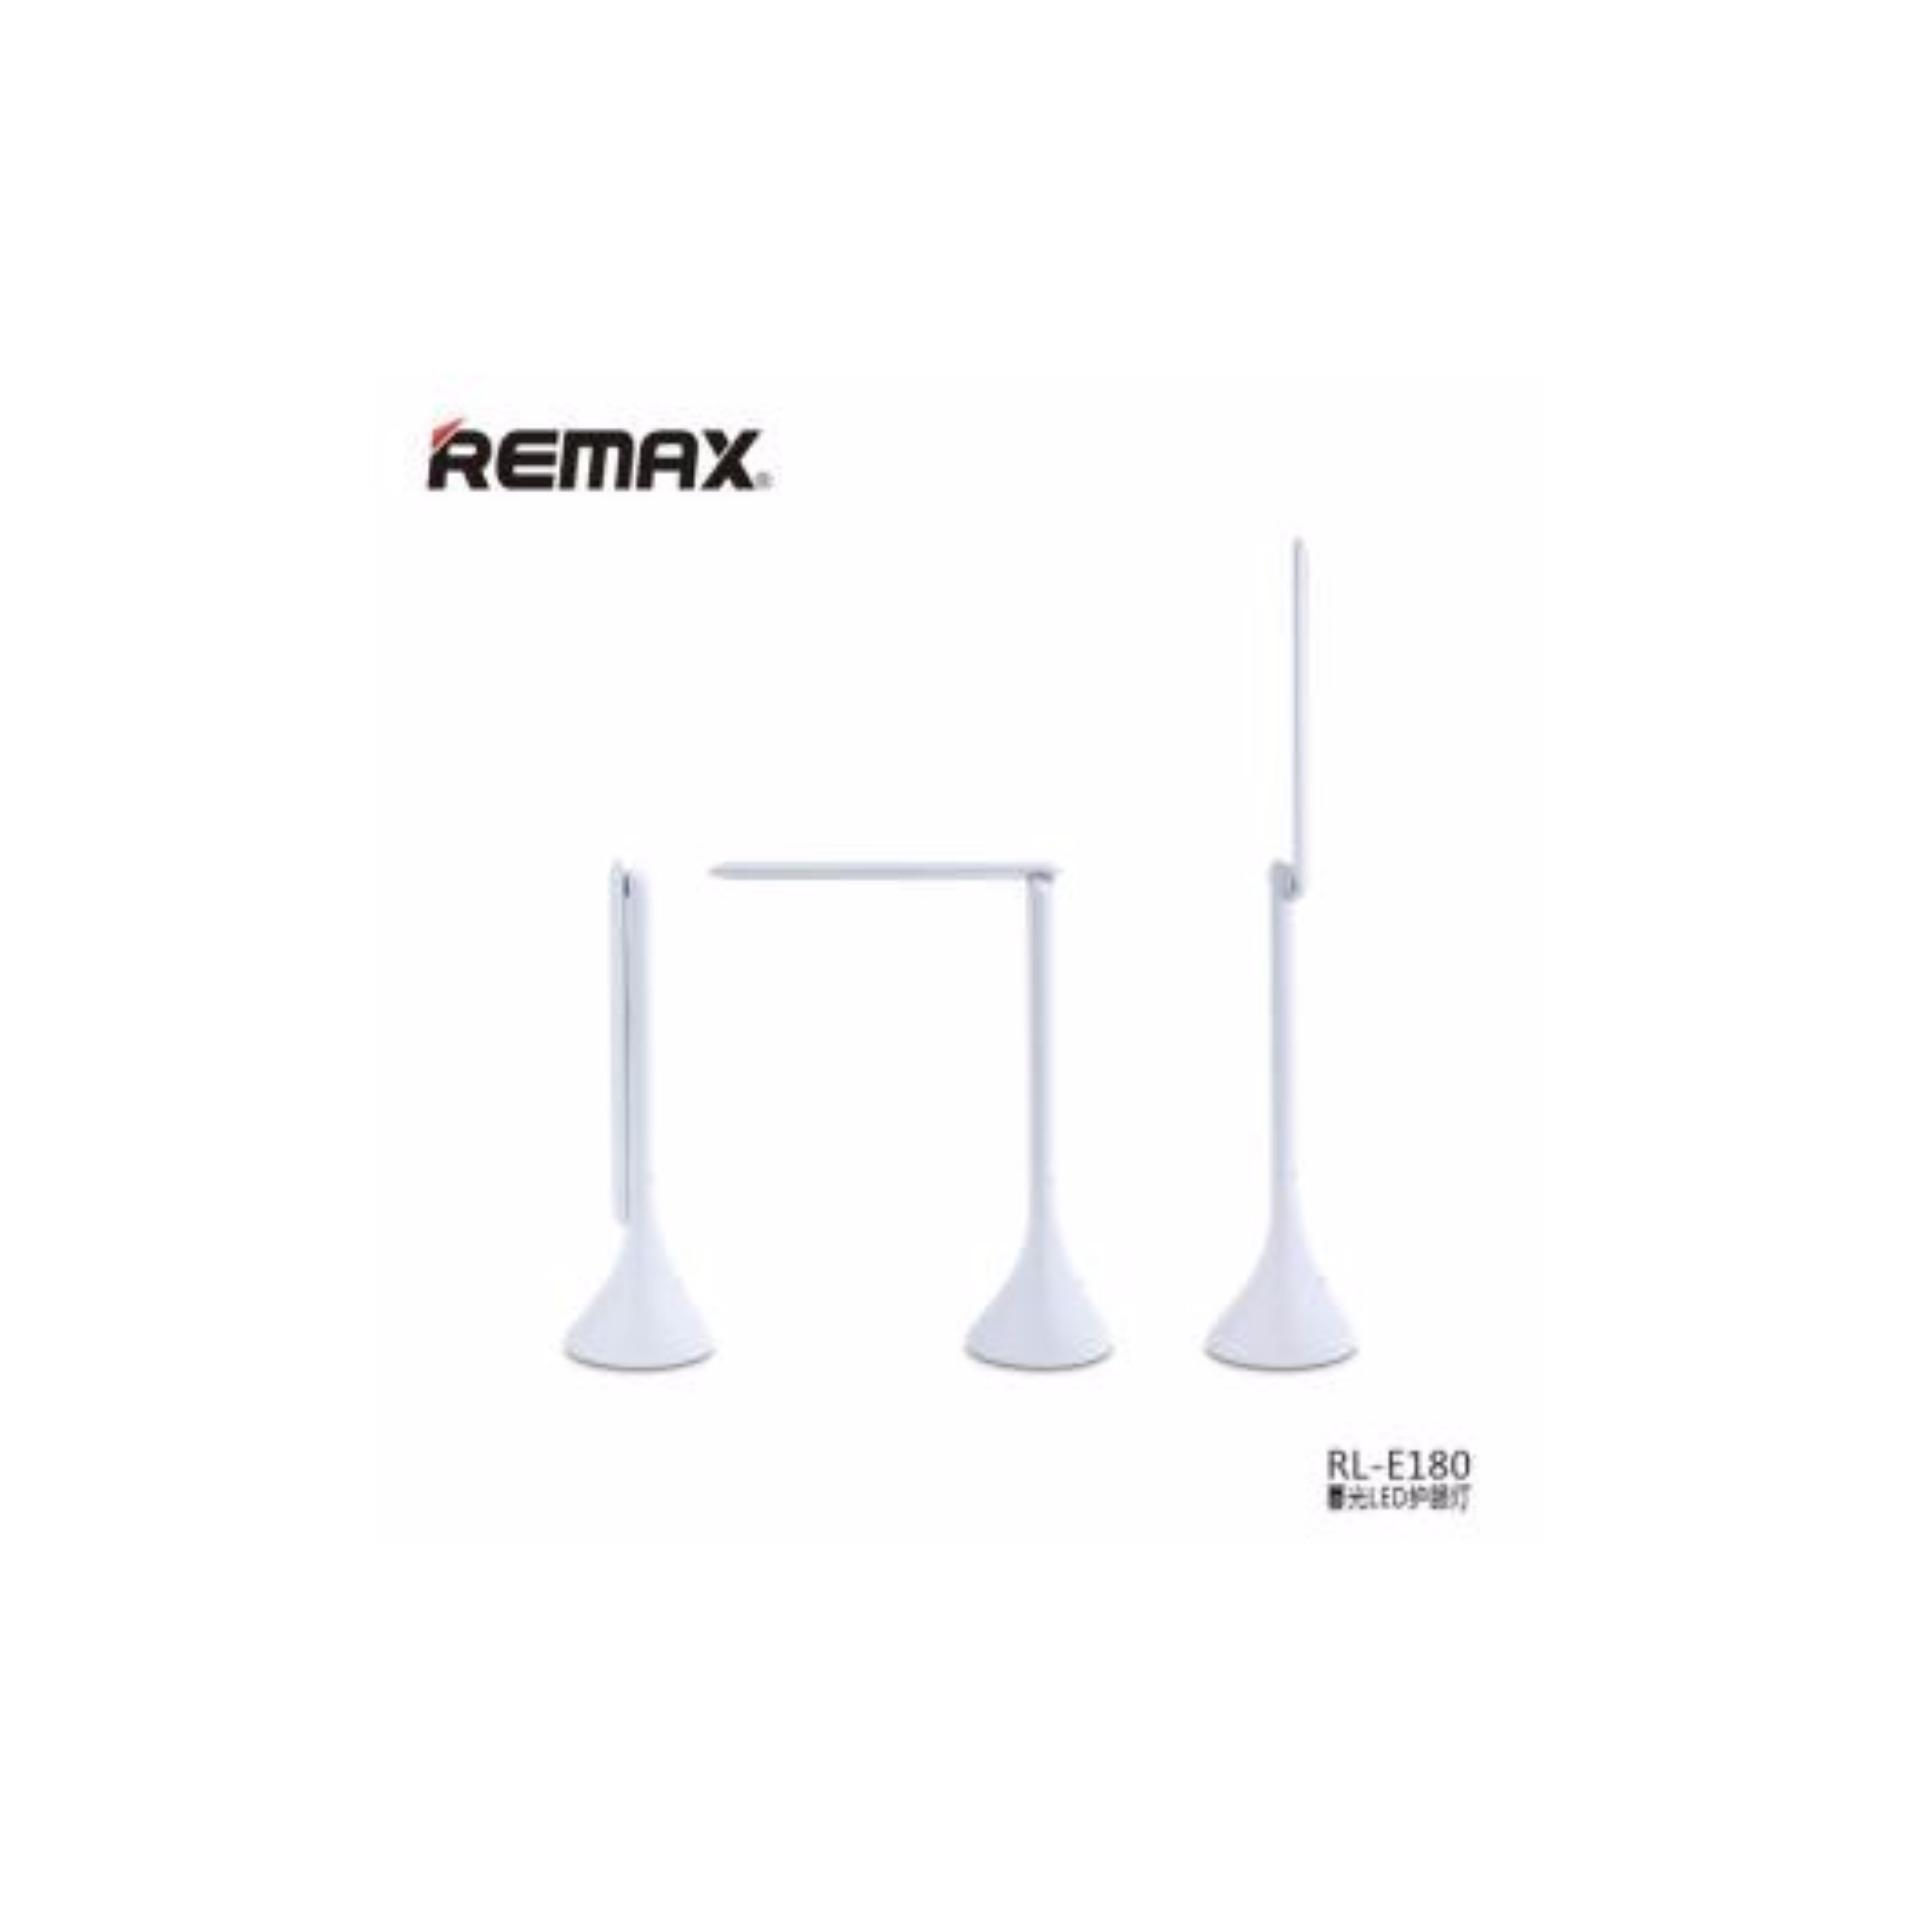 Đèn led để bàn Remax, chống cận, bảo vệ mắt